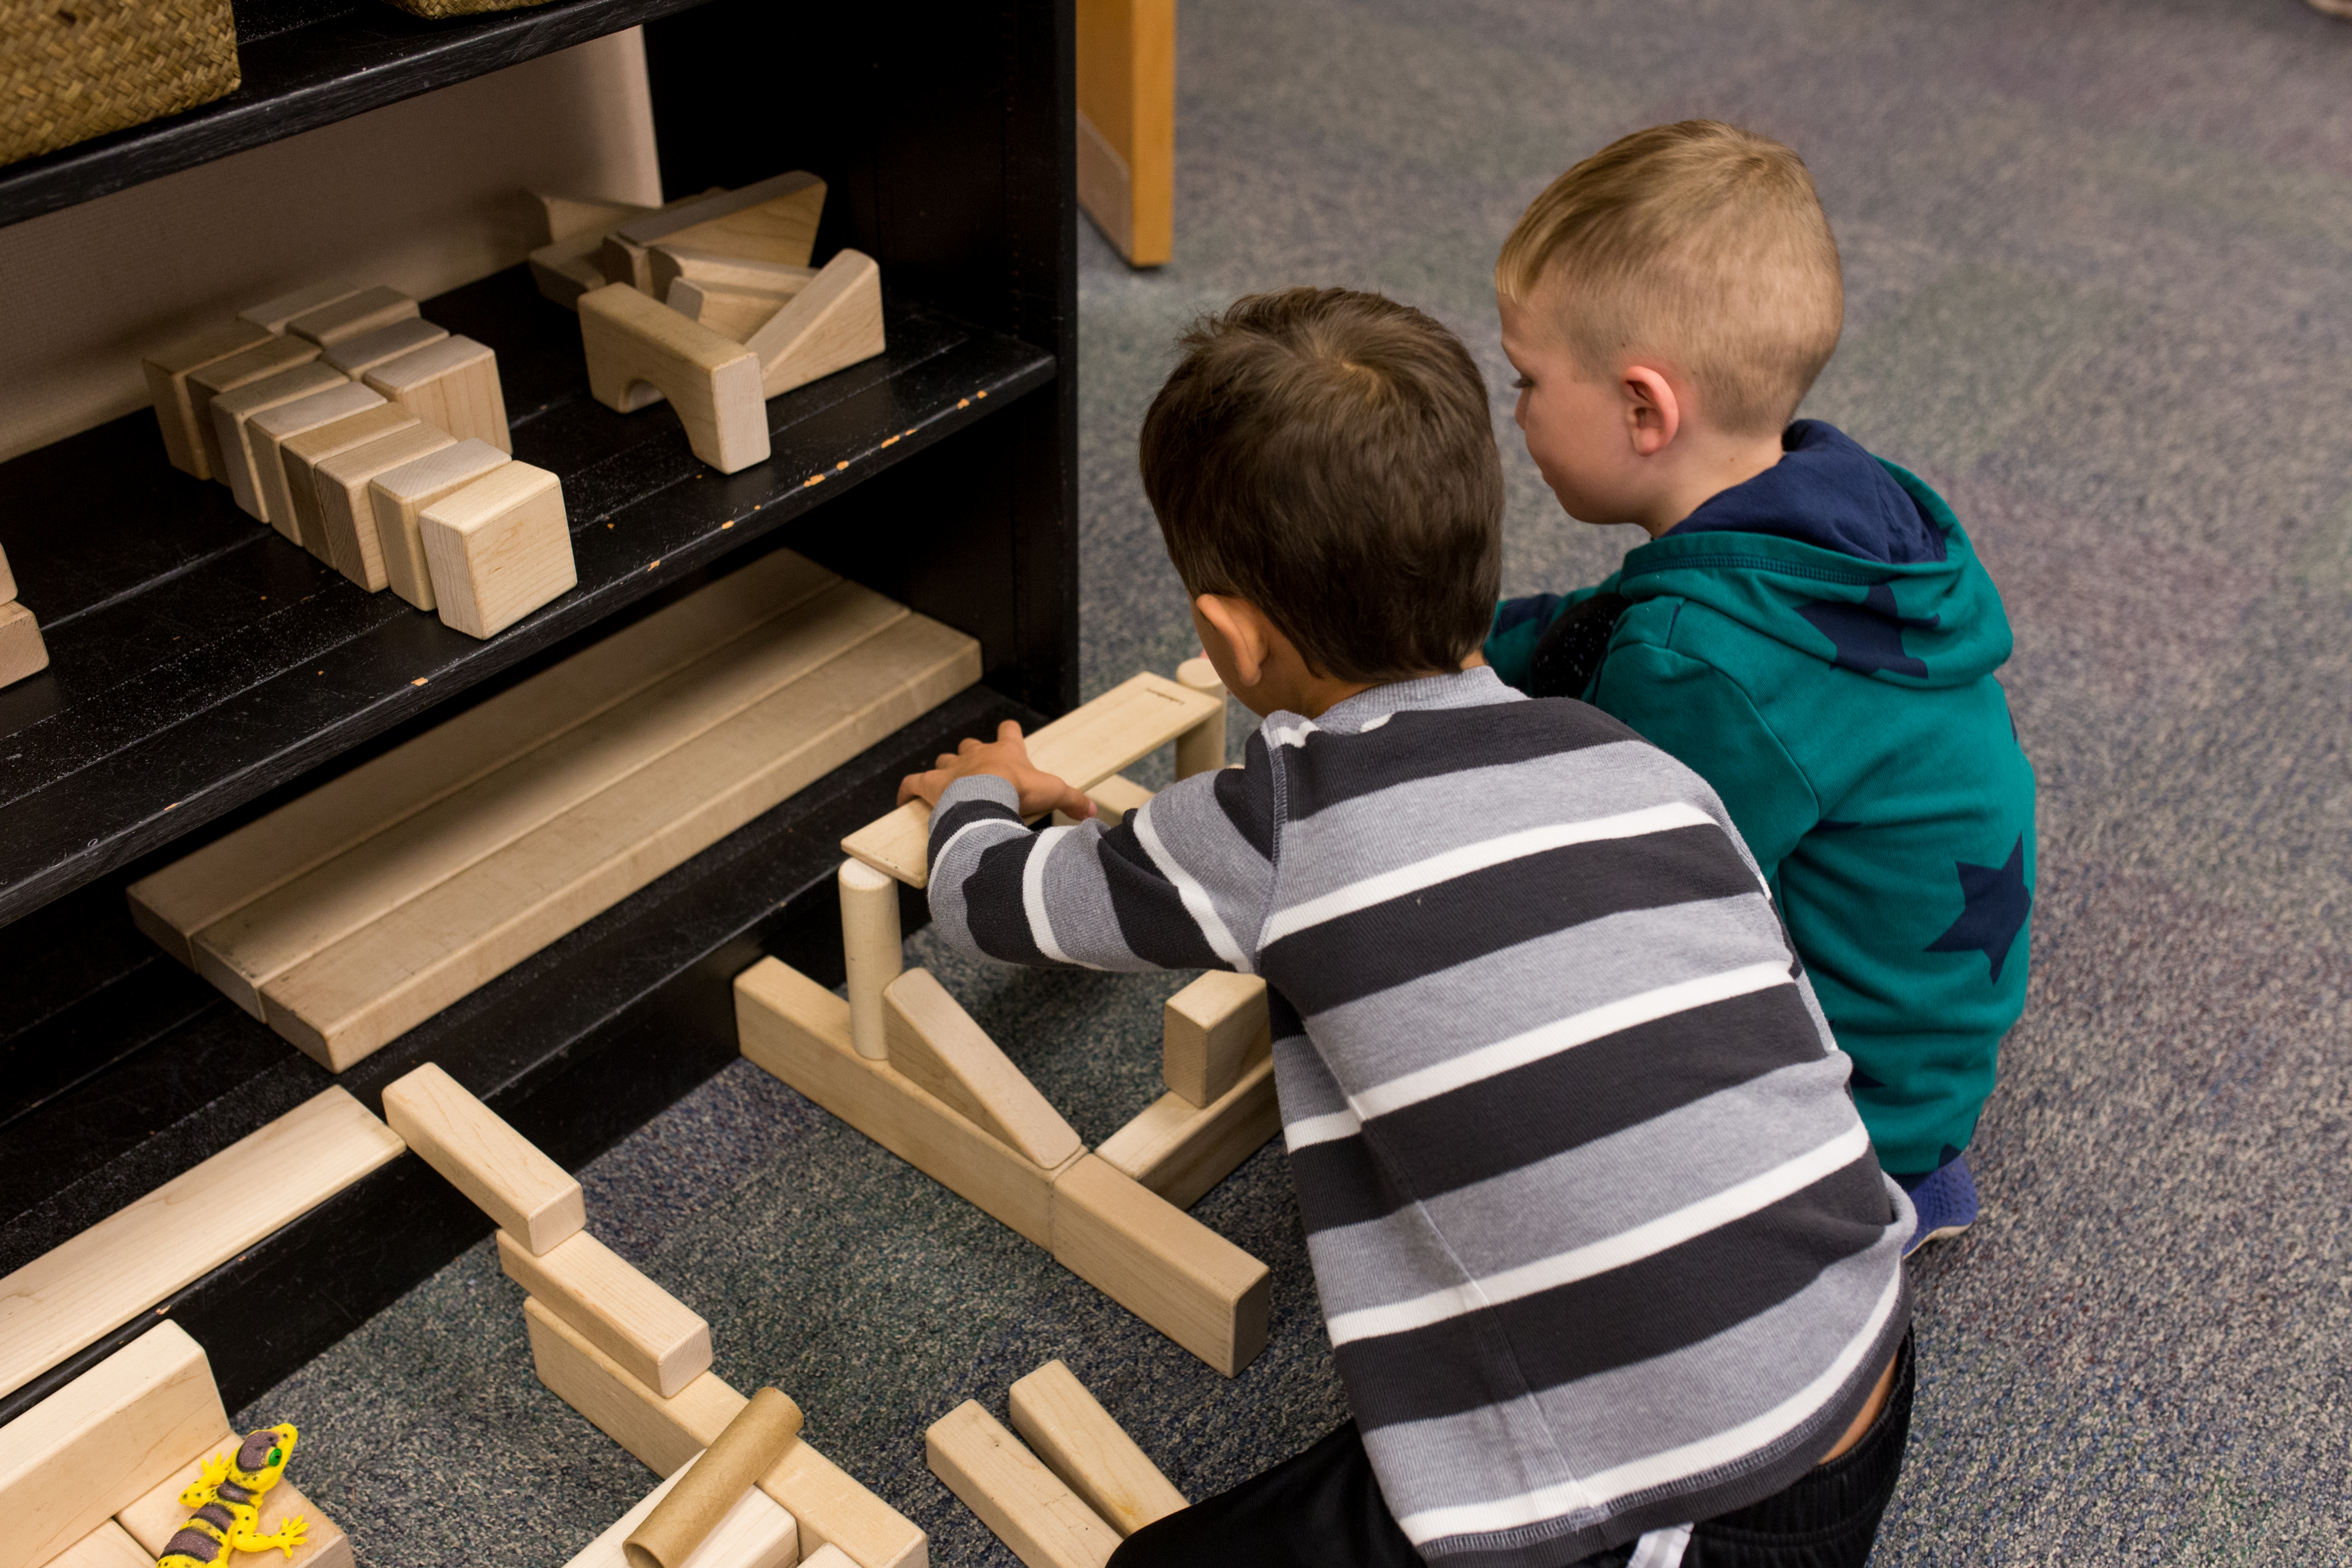 children building with wooden blocks on the floor